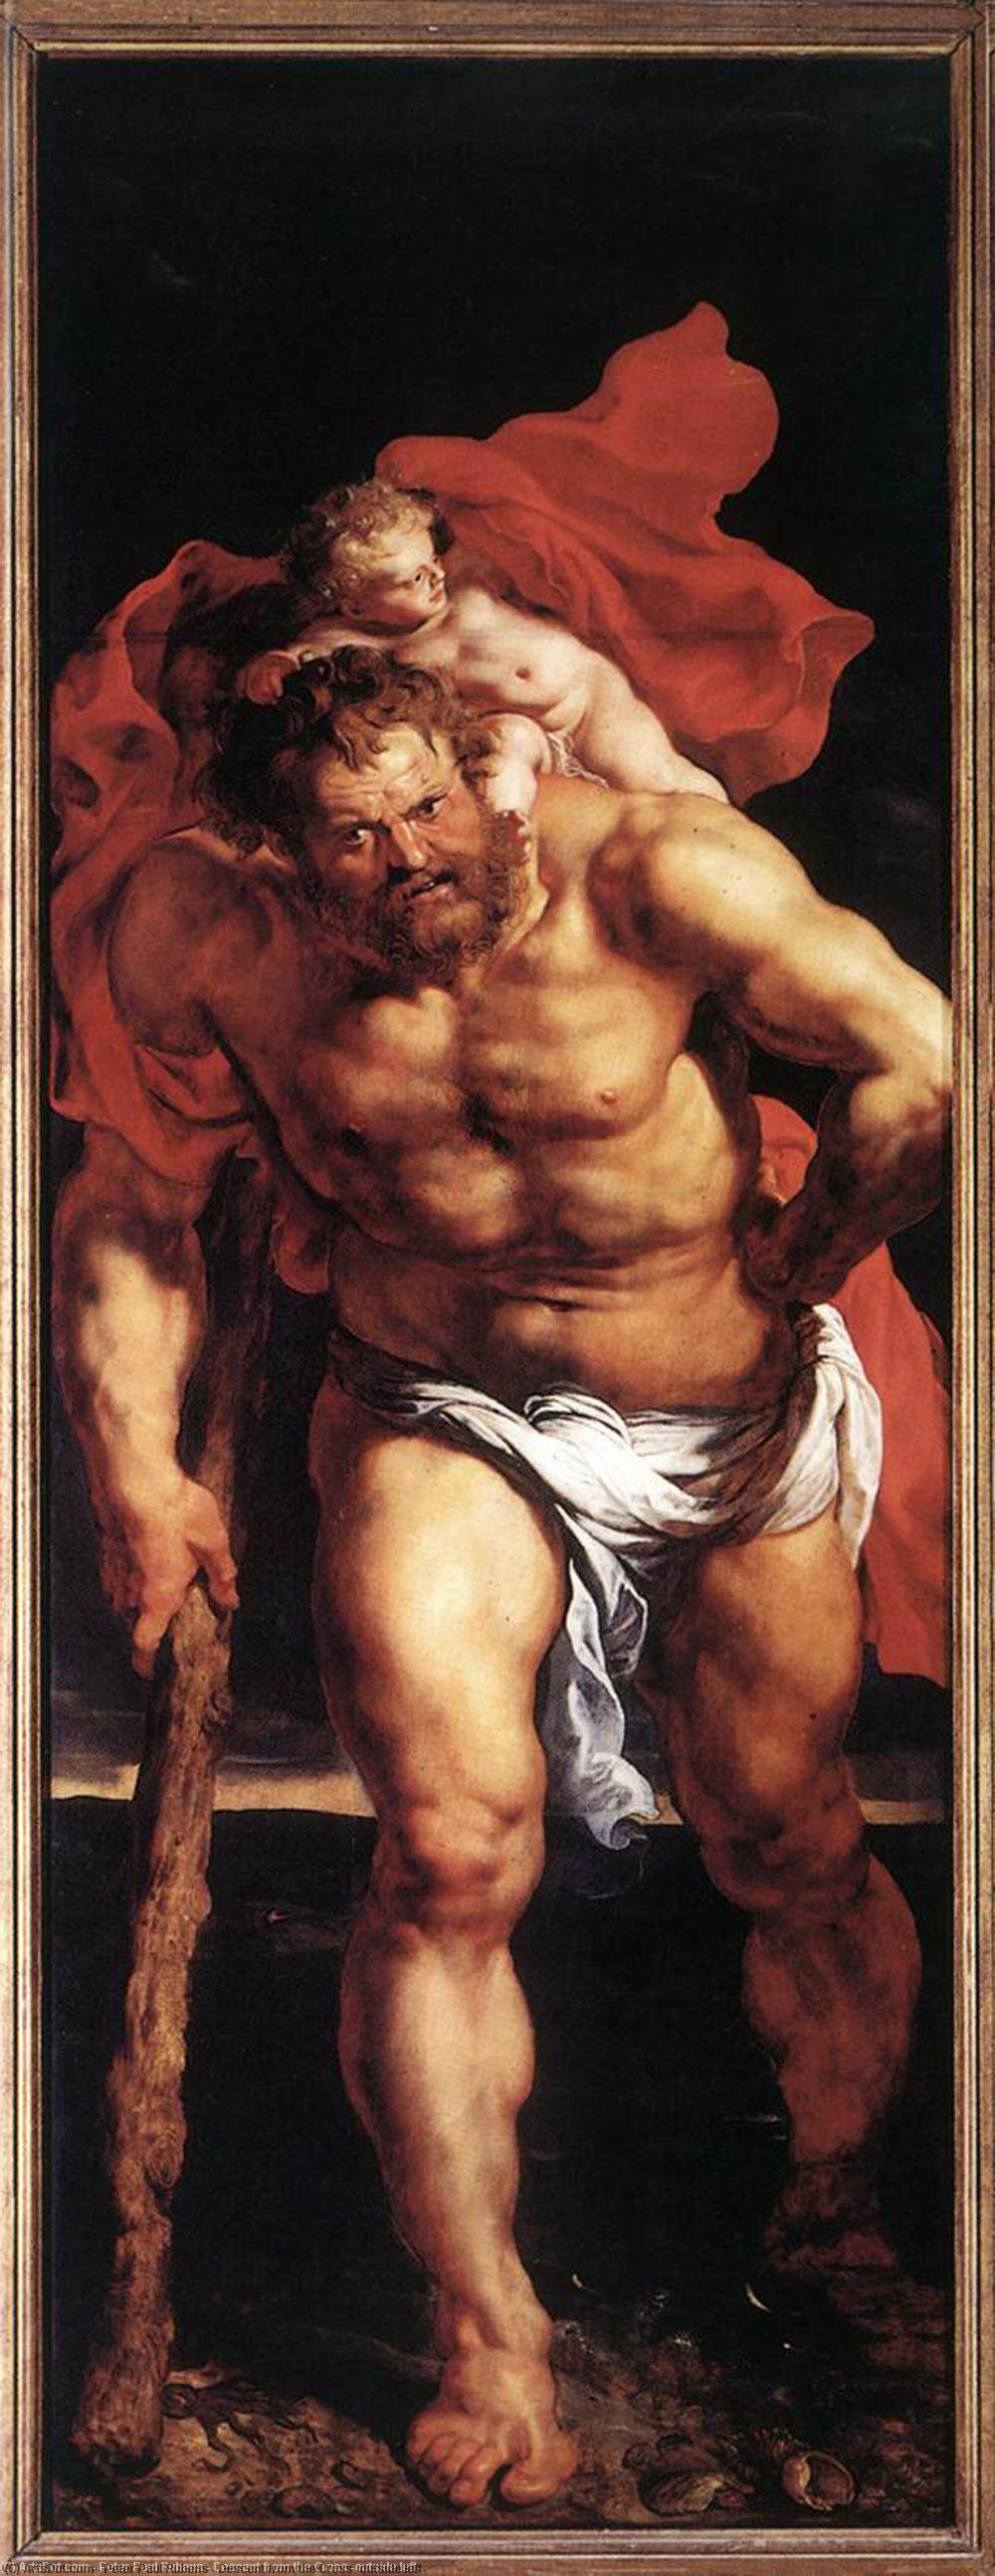 WikiOO.org - Энциклопедия изобразительного искусства - Живопись, Картины  Peter Paul Rubens - Снятие с креста снаружи  оставленные